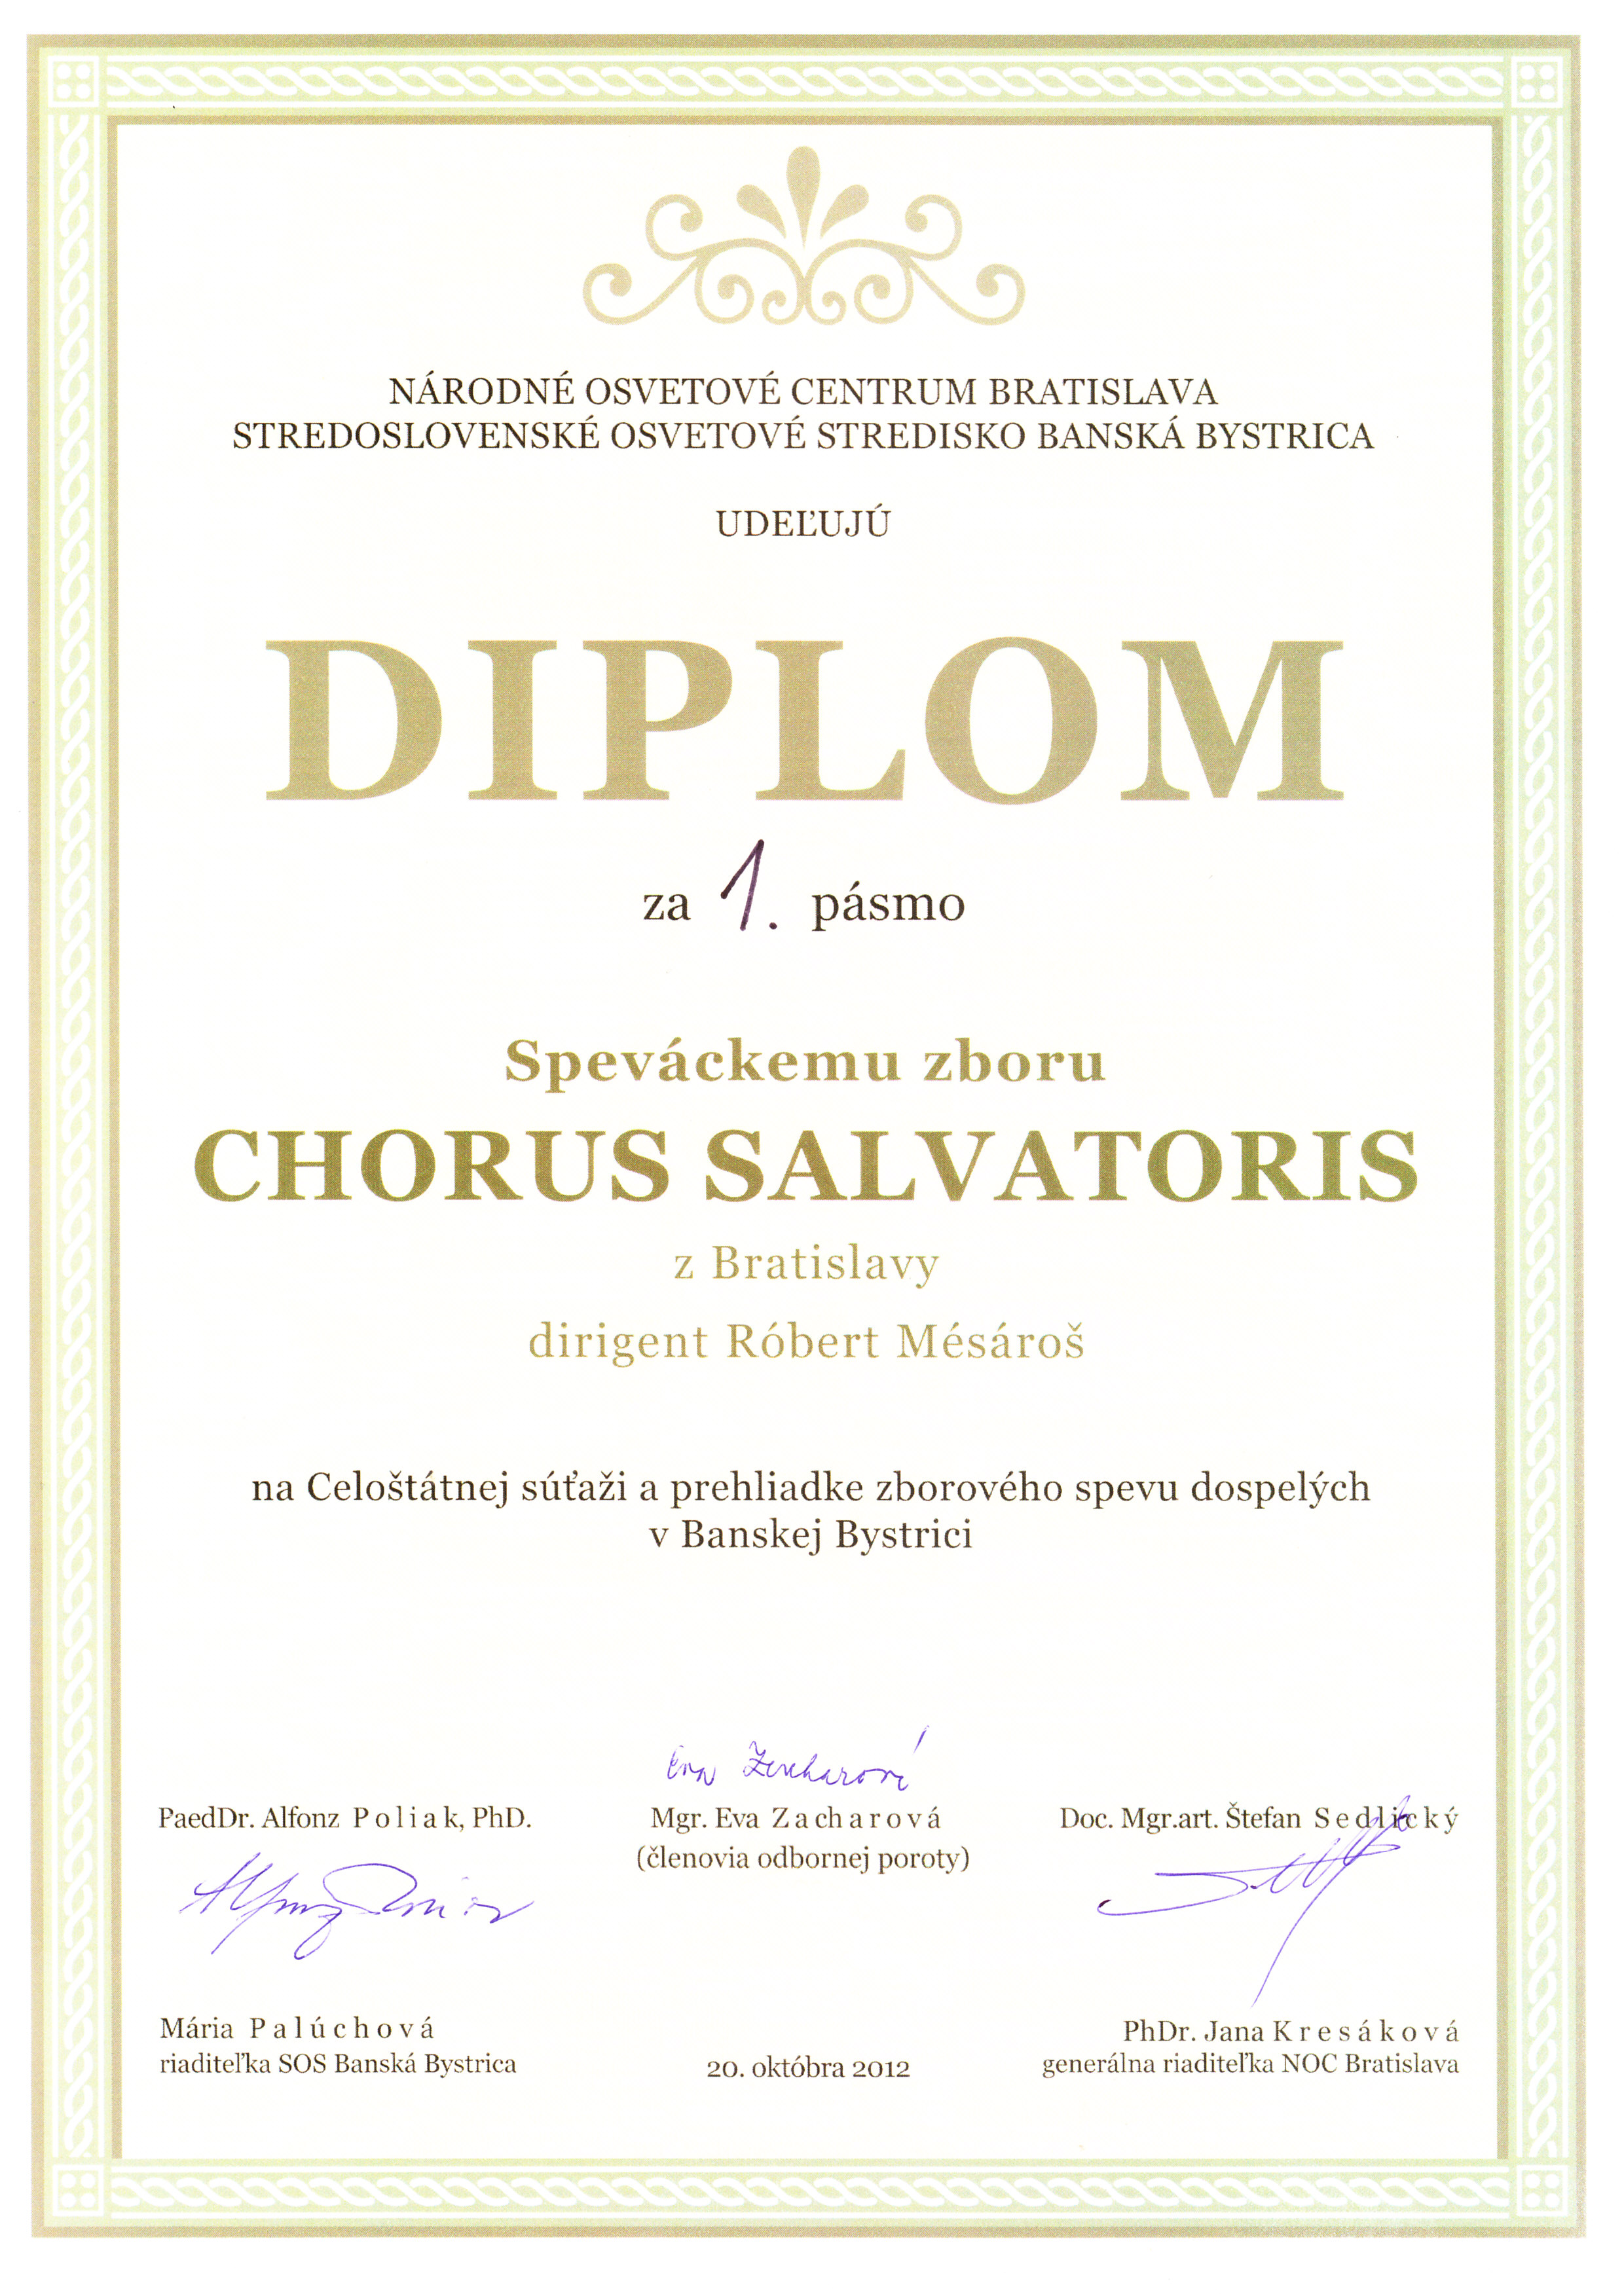 Diplom za 1. pásmo v Celoštátnej súťaži a prehliadke zborového spevu dospelých Banská Bystrica (20. októbra 2012)